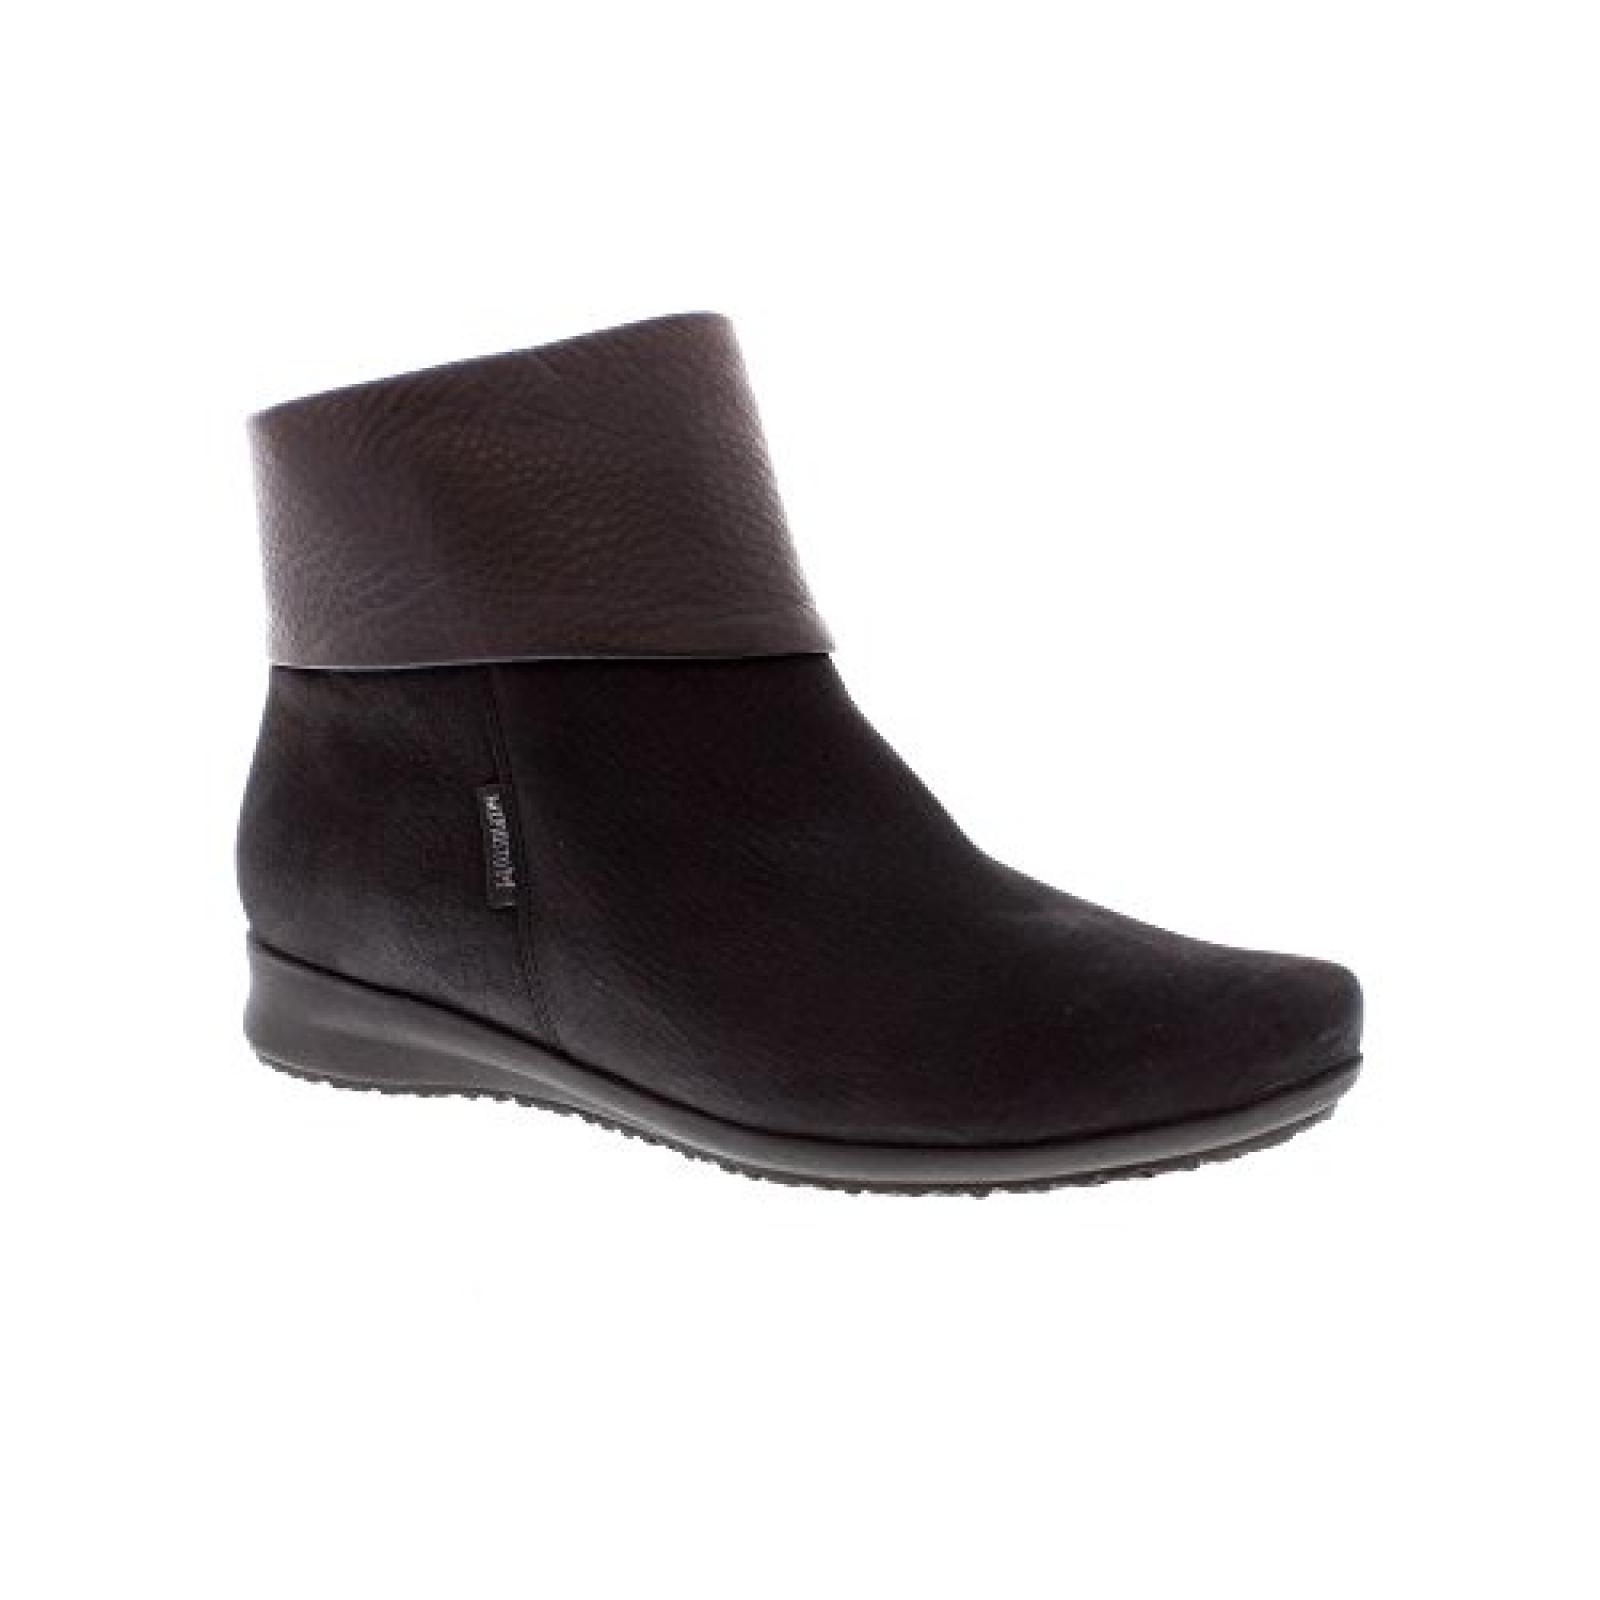 Mephisto Fiducia Black Bucksoft/Leather Ladies Ankle Boot 